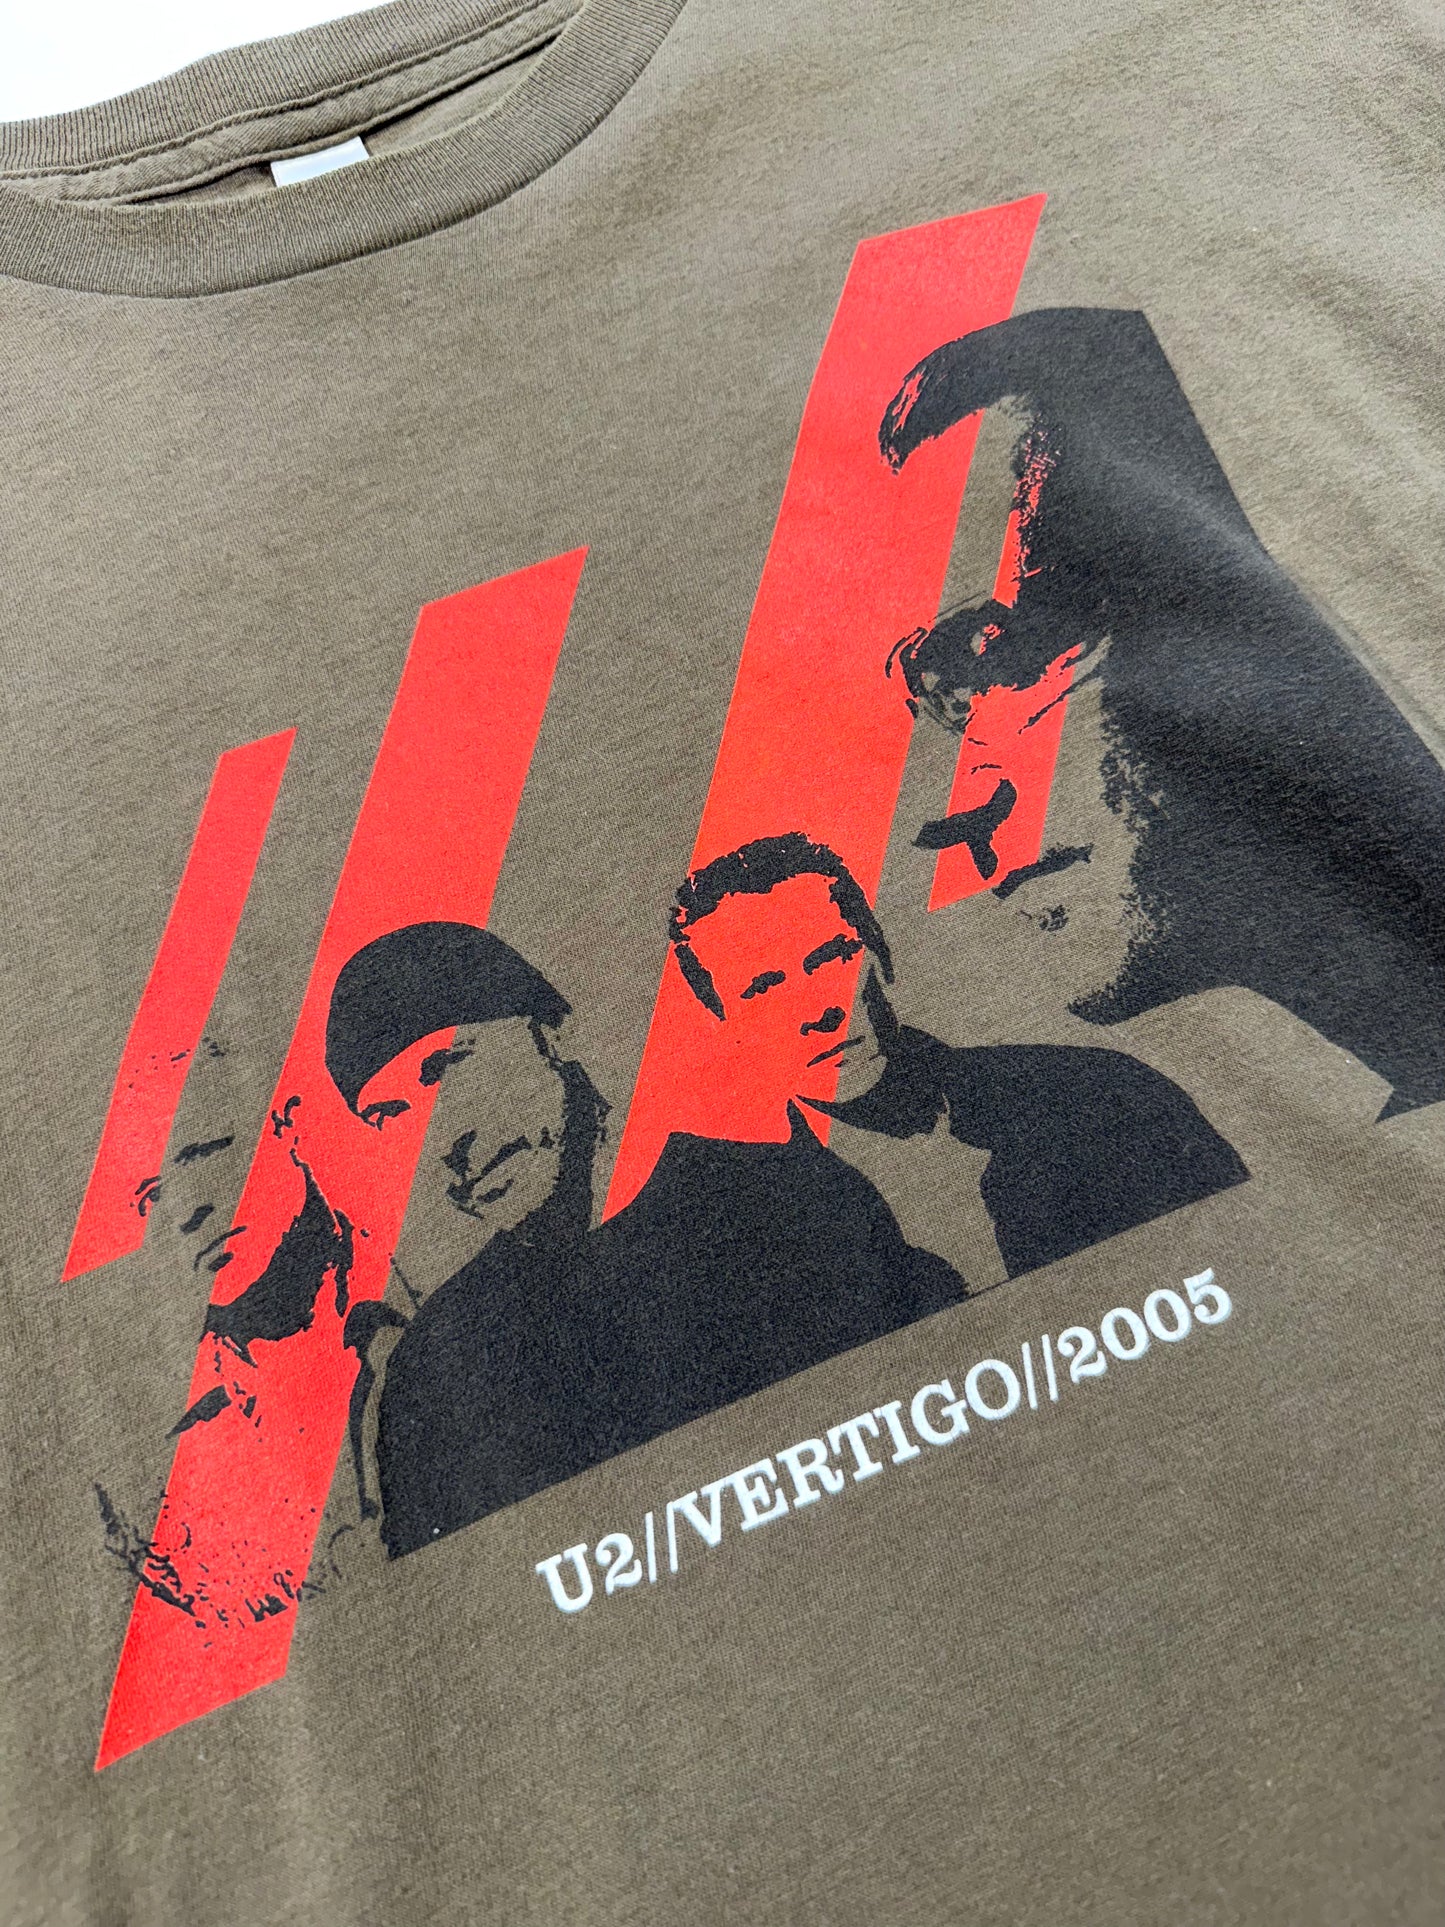 Vintage U2 T-Shirt Band Tee 2005 Vertigo Tour USA Made